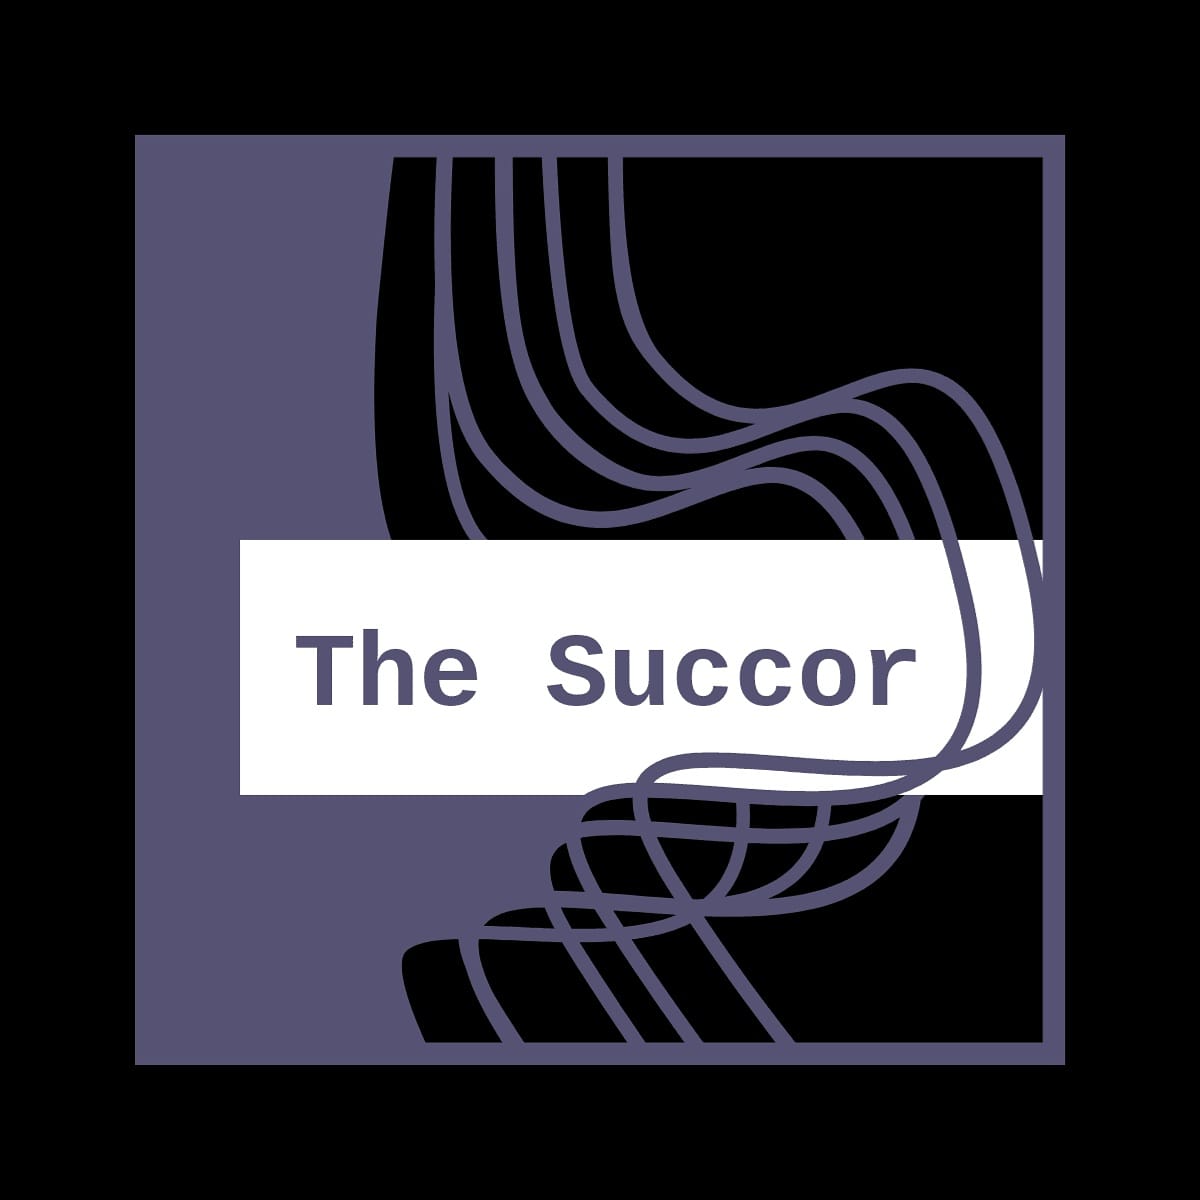 The Succor-The poem teller